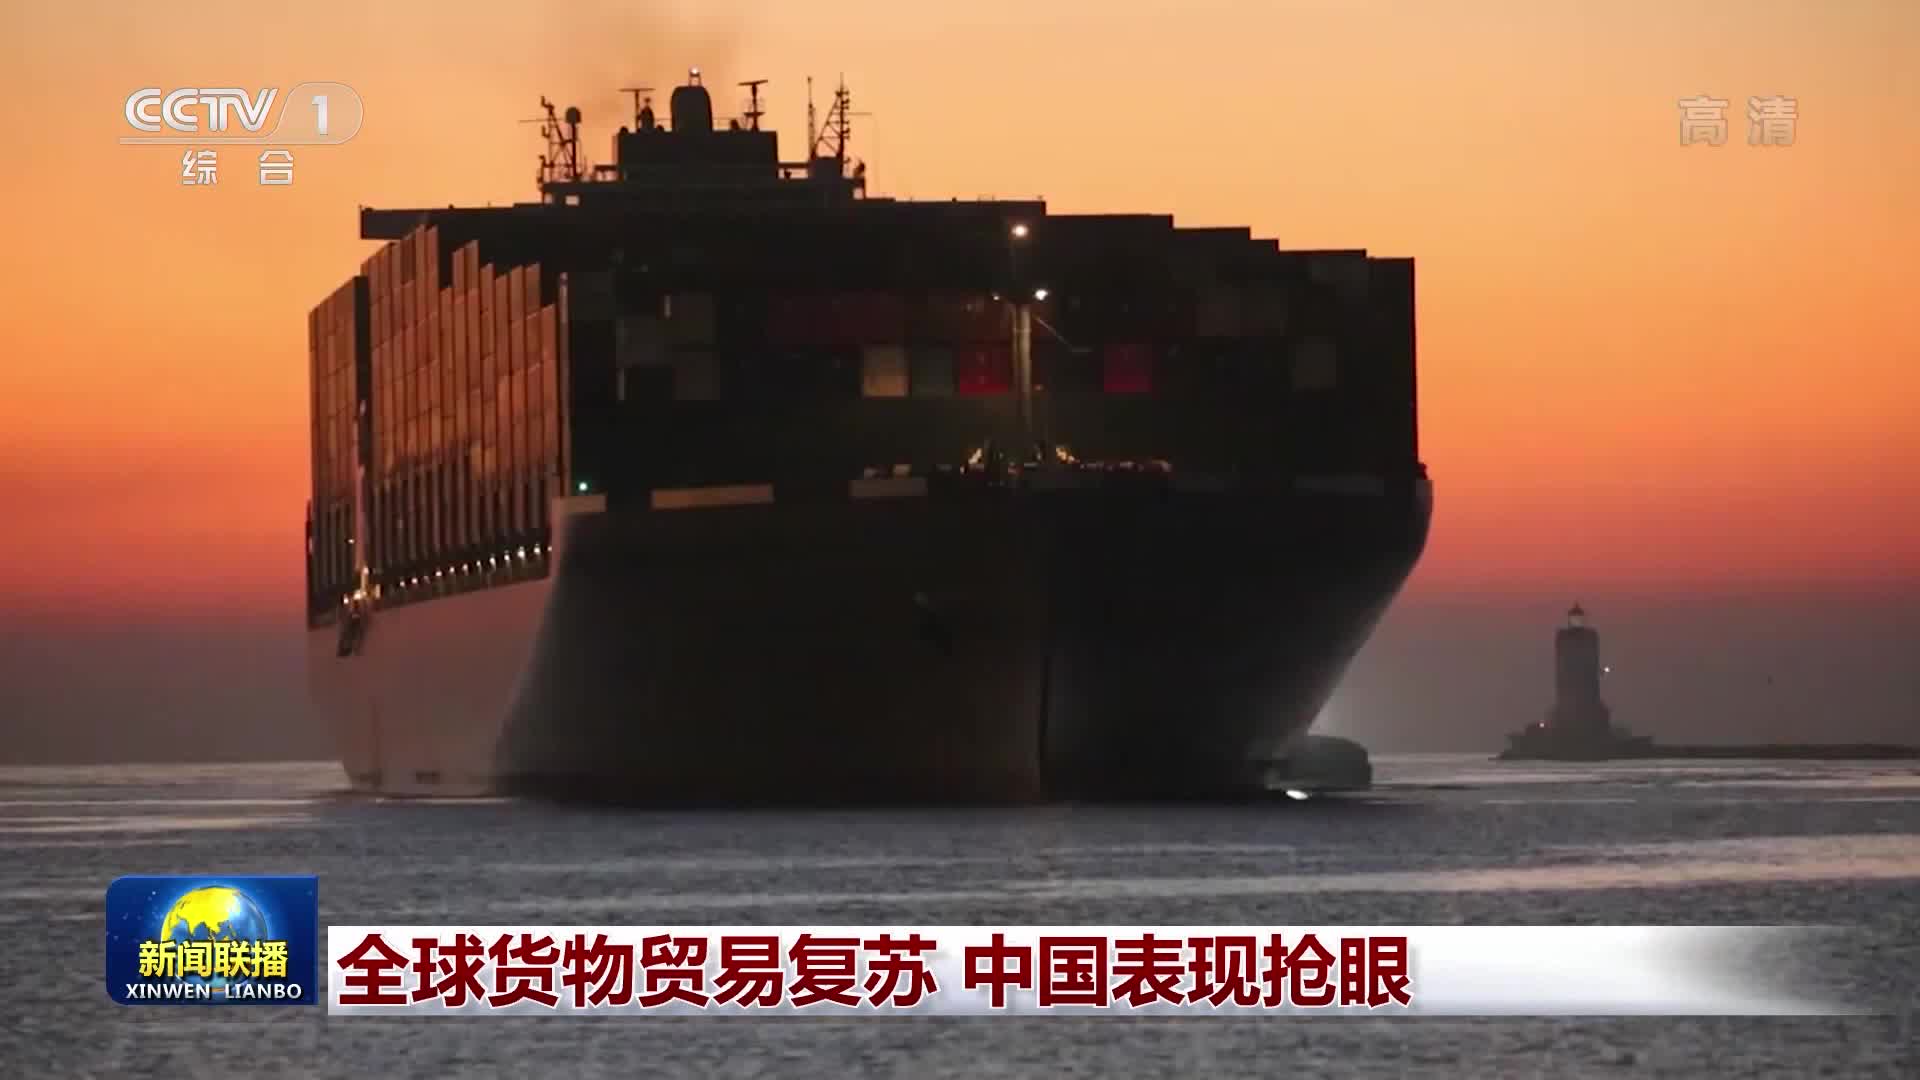 全球货物贸易复苏 中国表现抢眼